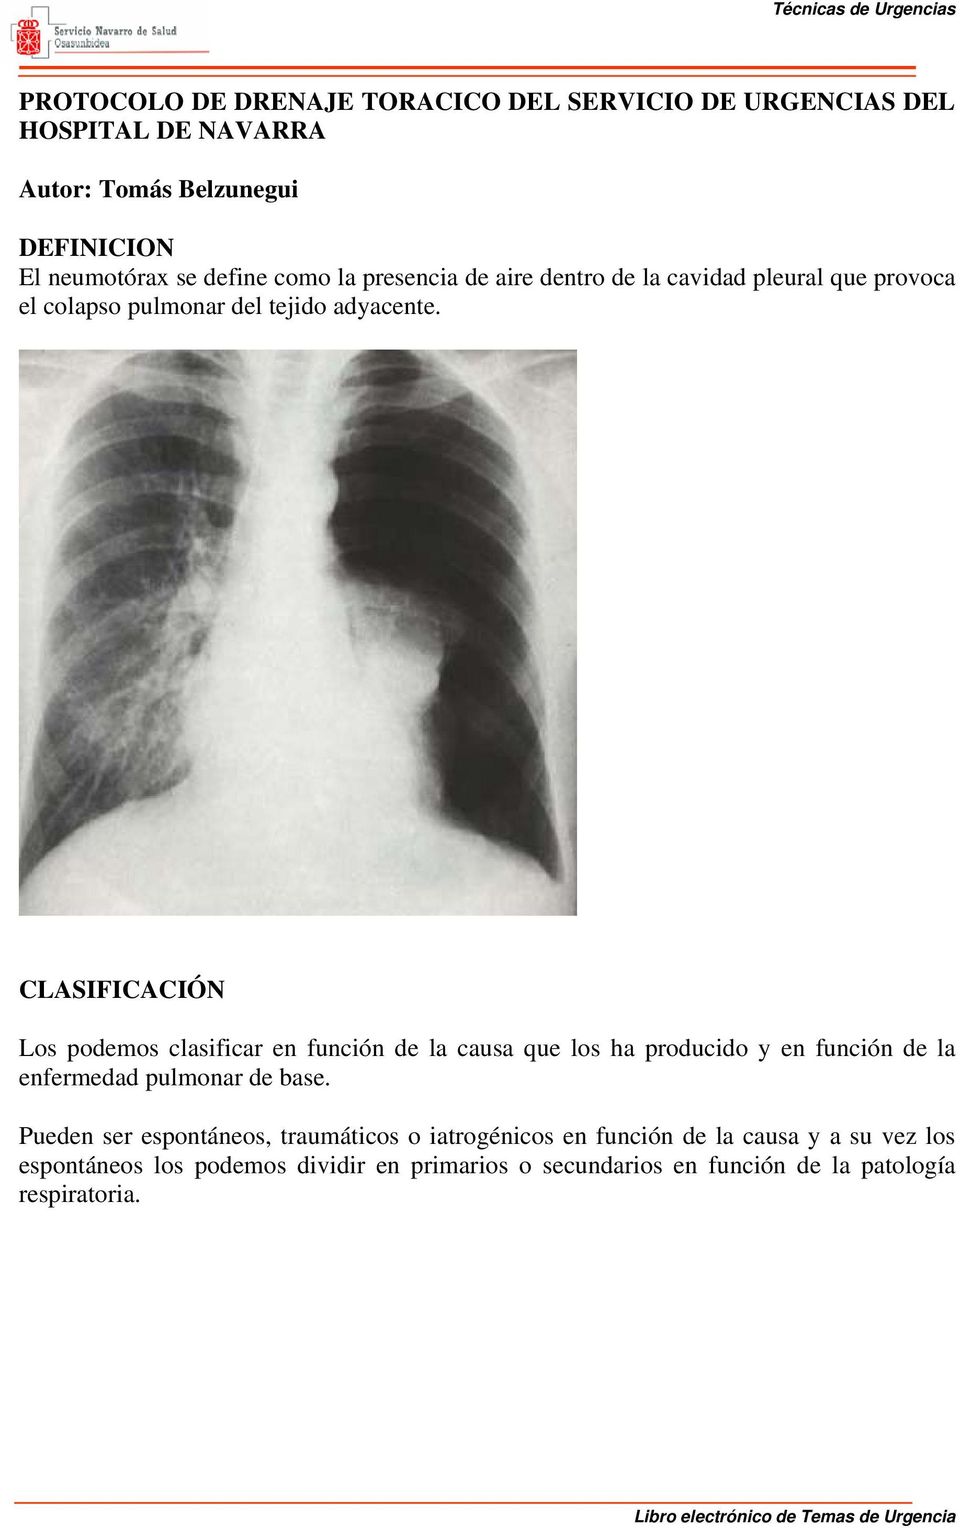 CLASIFICACIÓN Los podemos clasificar en función de la causa que los ha producido y en función de la enfermedad pulmonar de base.